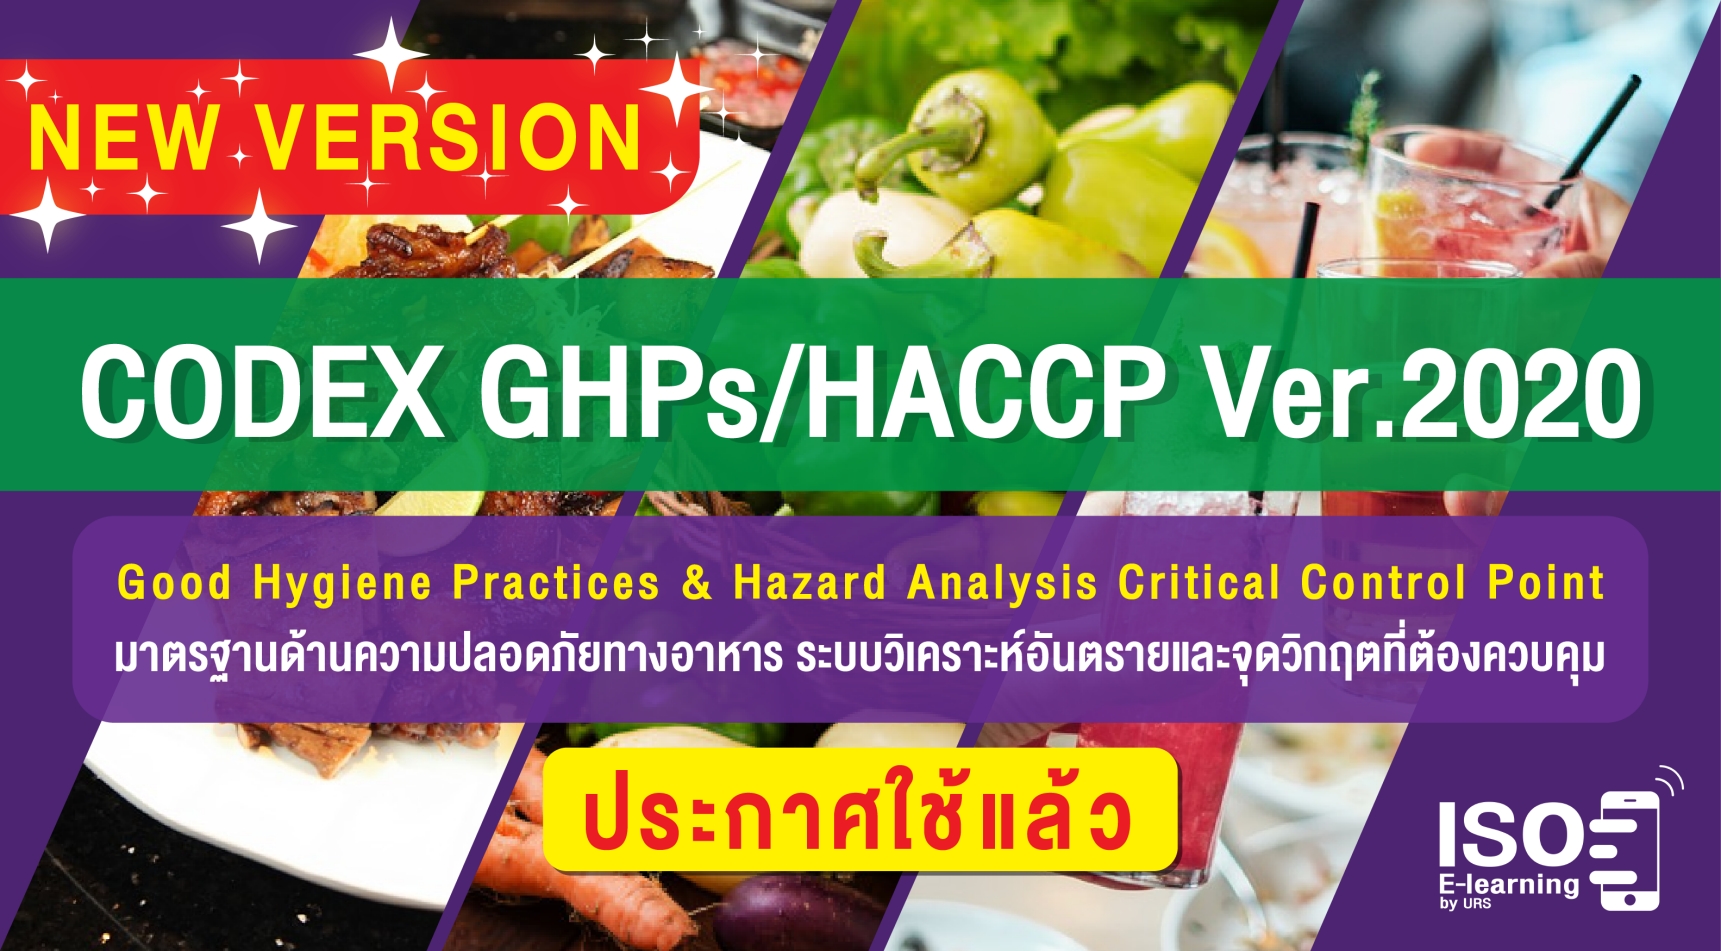 ข้อกำหนด CODEX GHPs / HACCP  Ver.2020